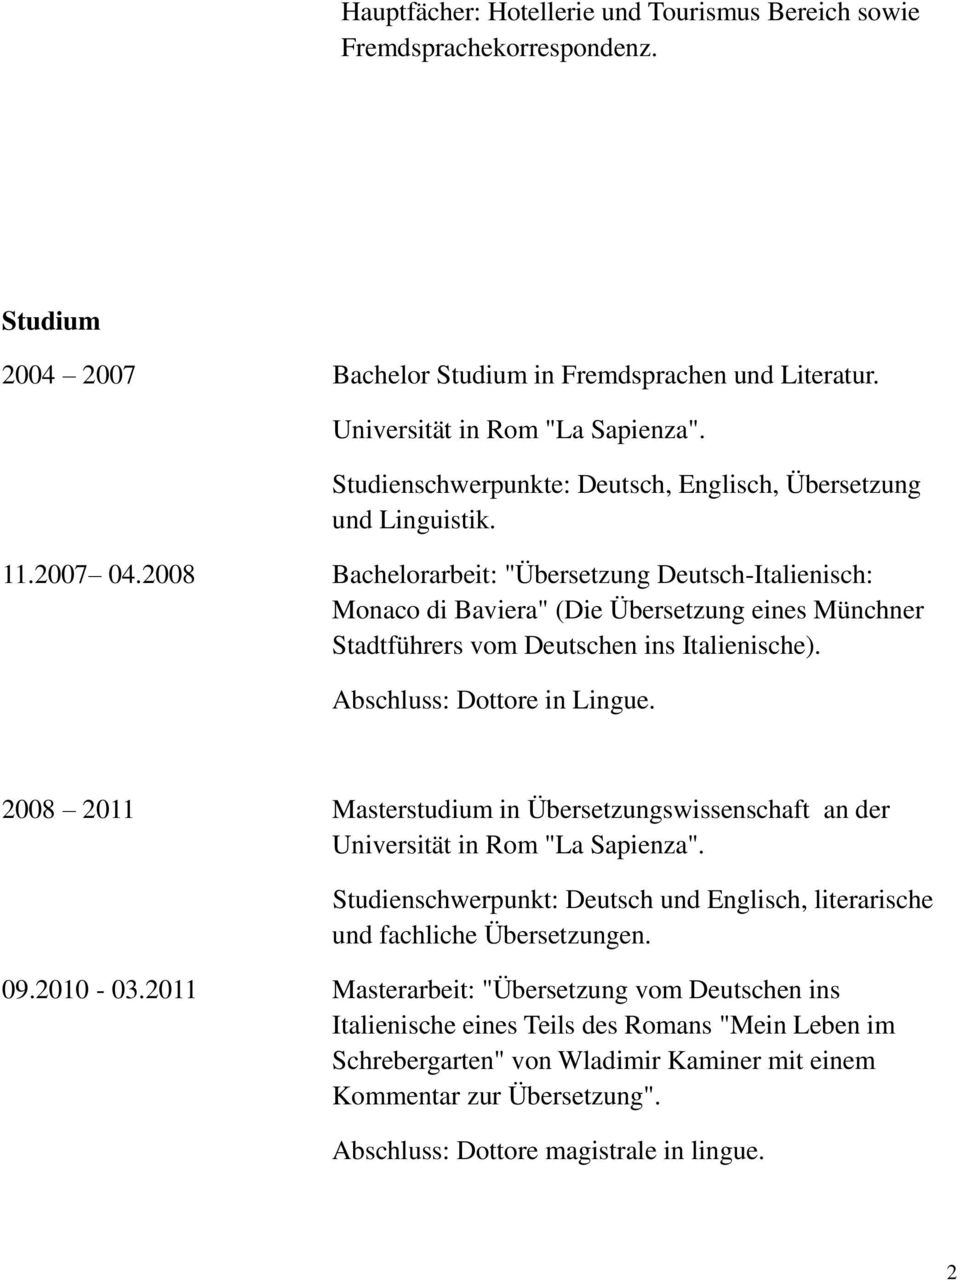 2008 Bachelorarbeit: "Übersetzung Deutsch-Italienisch: Monaco di Baviera" (Die Übersetzung eines Münchner Stadtführers vom Deutschen ins Italienische). Abschluss: Dottore in Lingue.